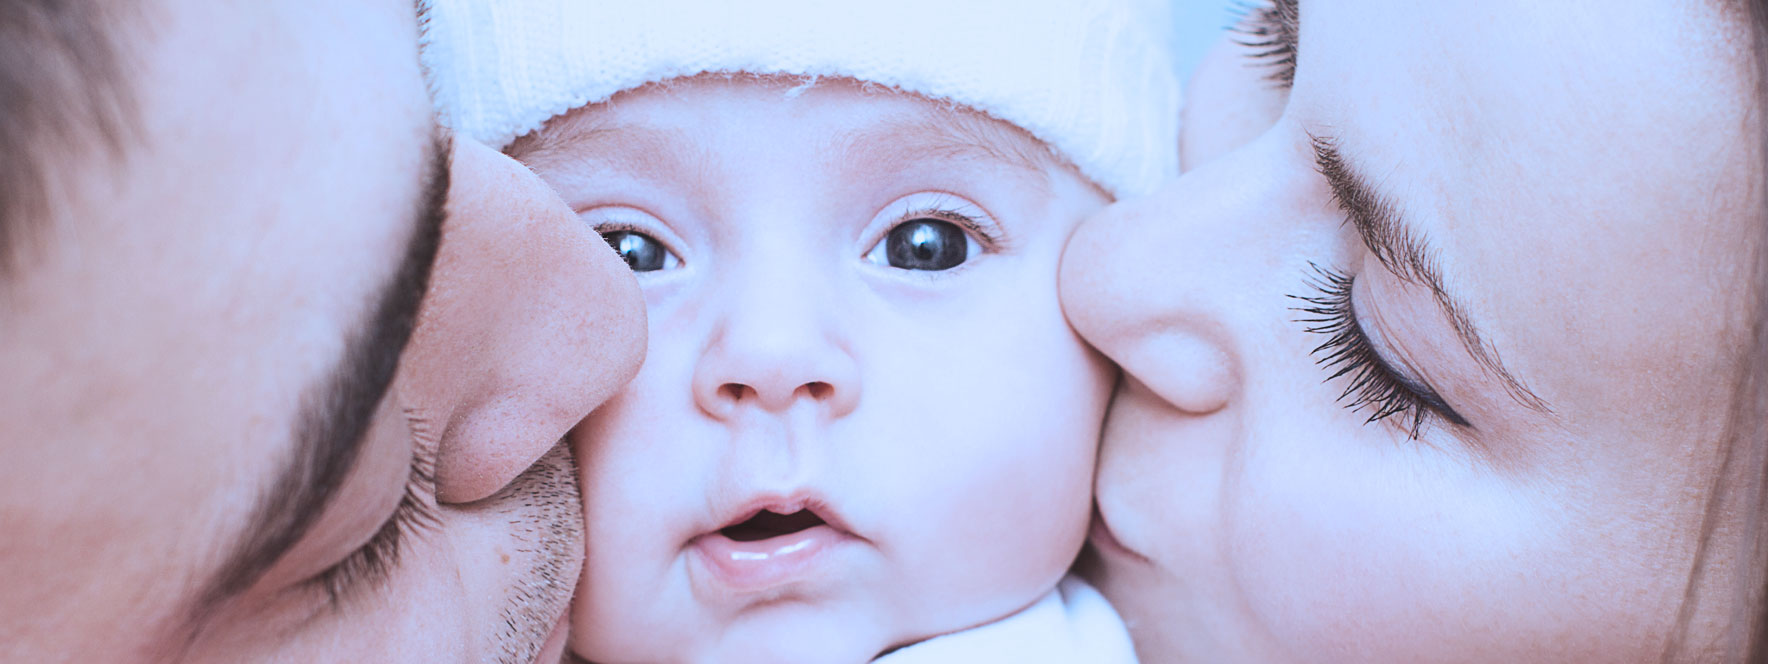 Soulager les nouveaux parents grâce aux bienfaits de la massothérapie - Blogue du Réseau